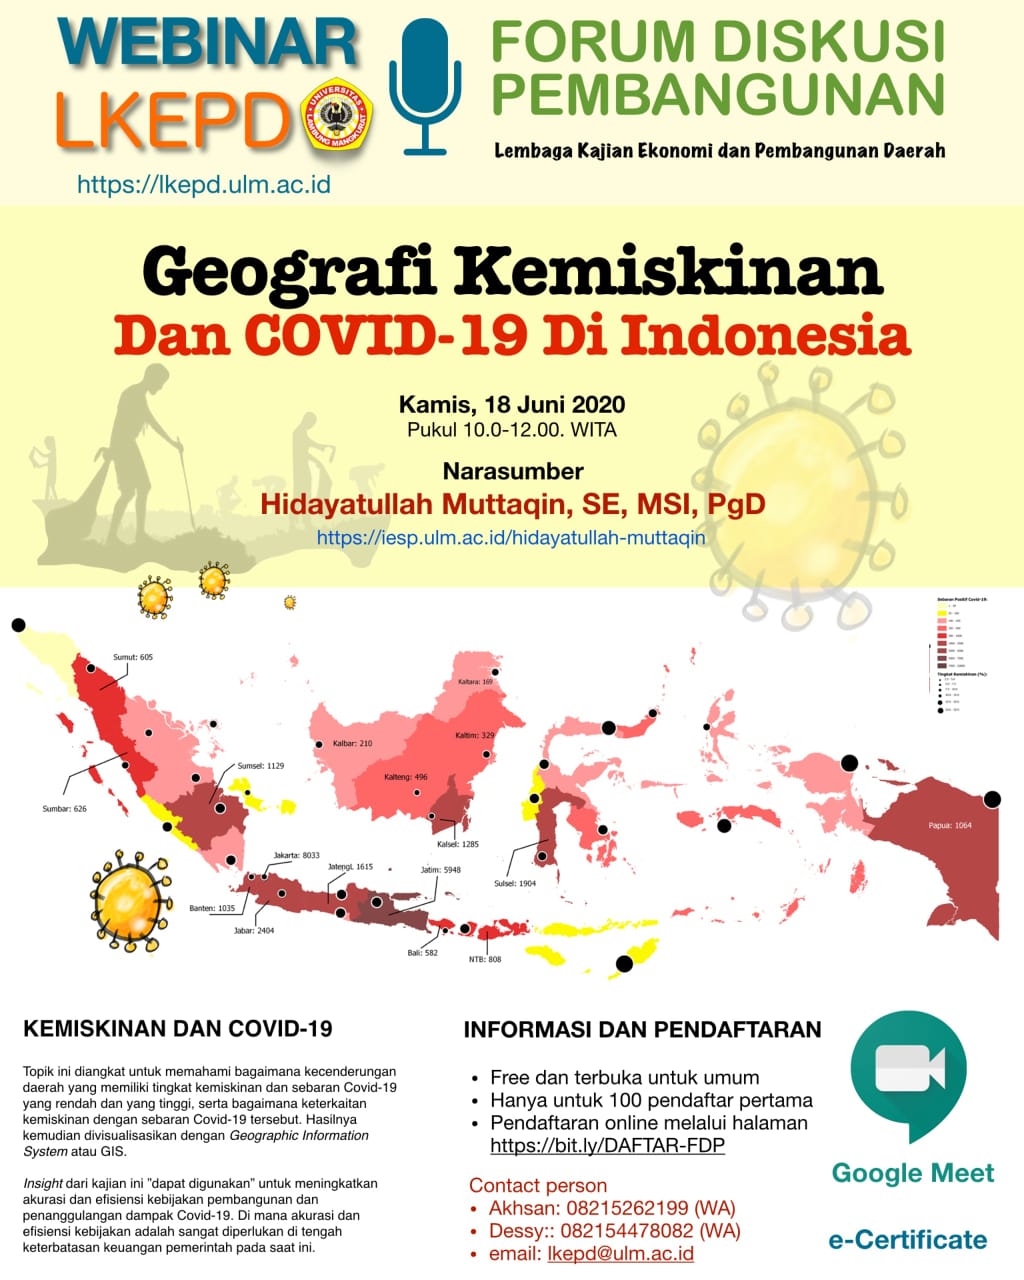 WEBINAR LKEPD-GEOGRAFI KEMISKINAN DAN COVID-19 DI INDONESIA